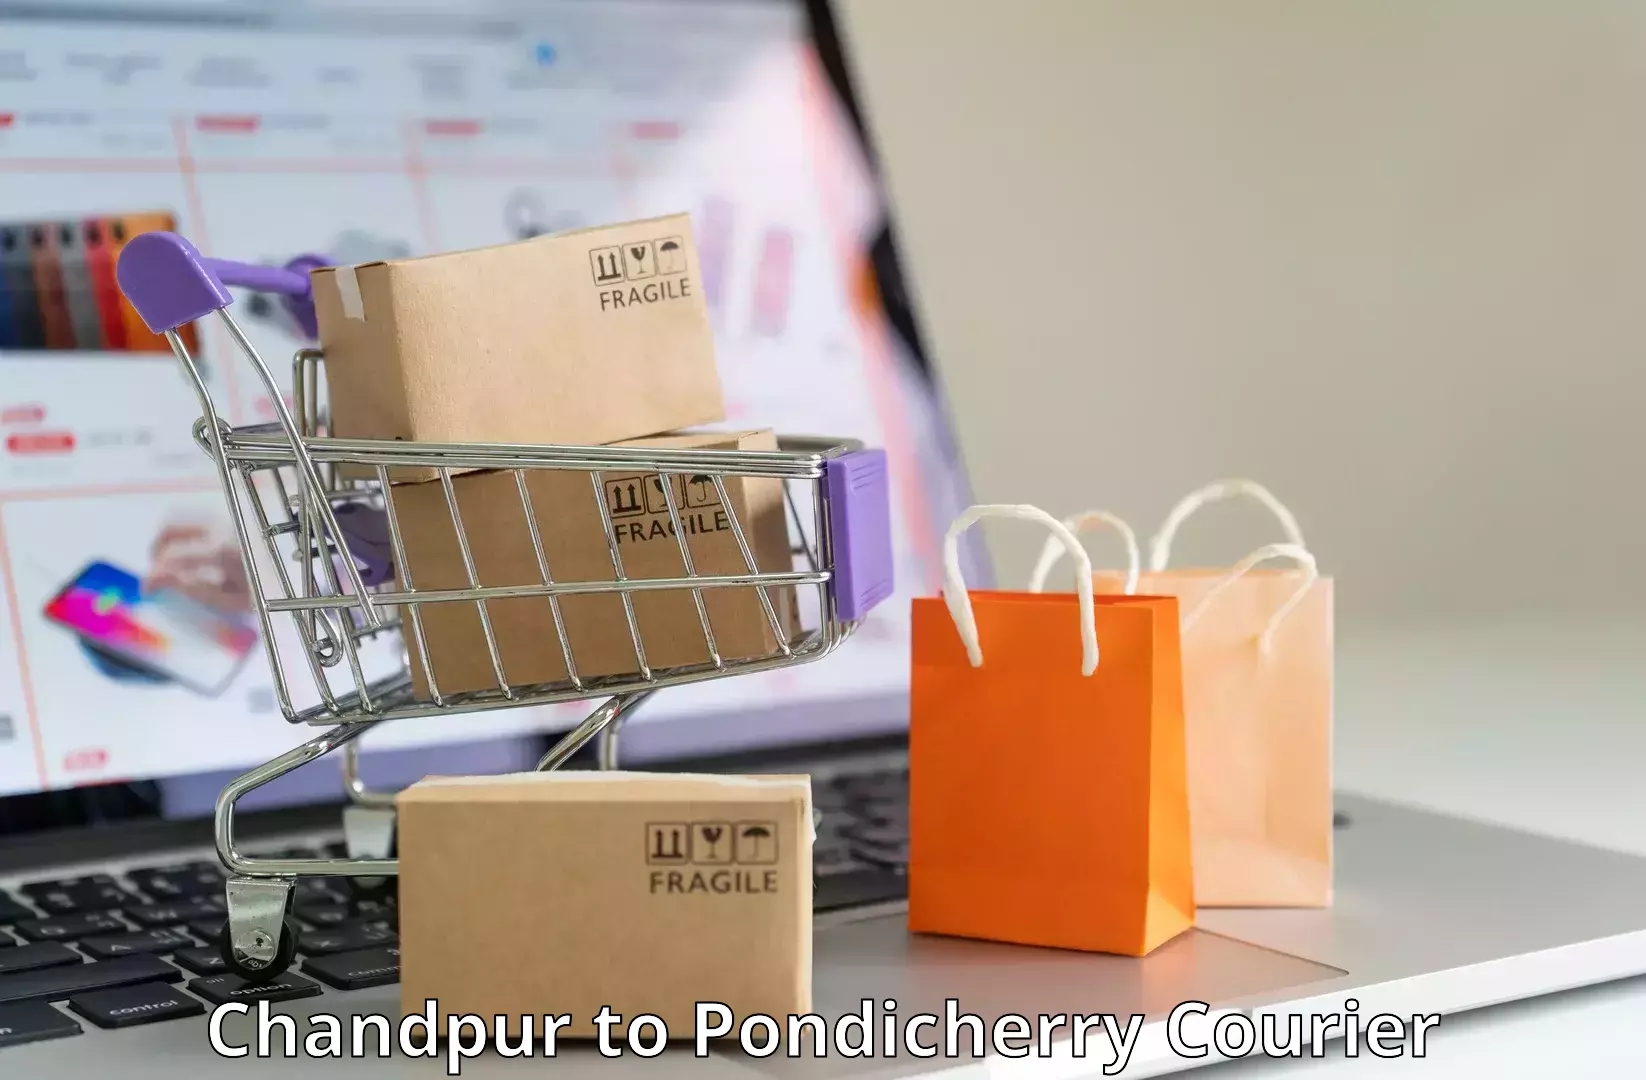 On-demand courier Chandpur to NIT Puducherry